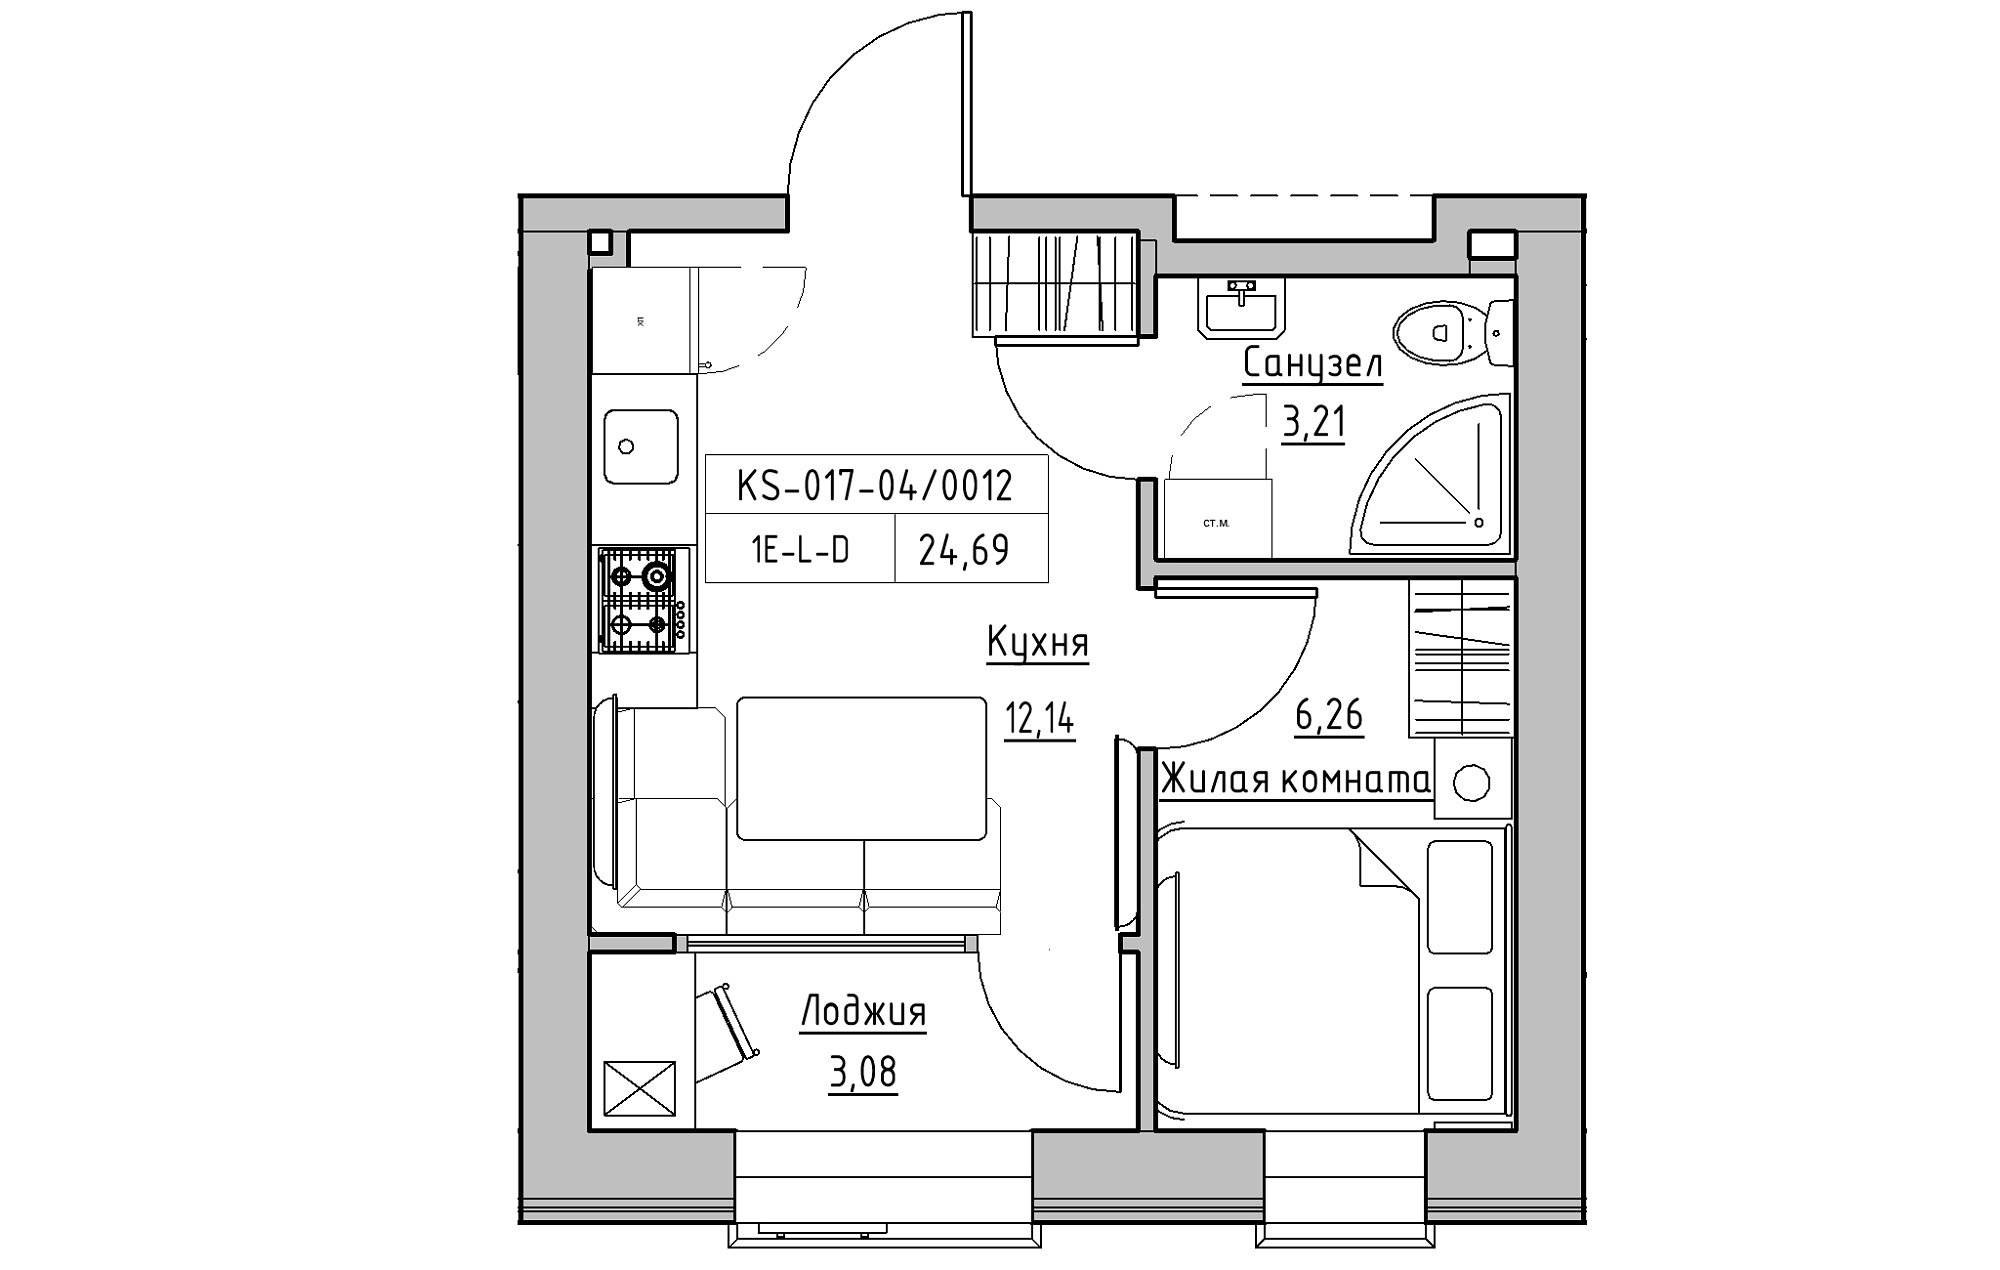 Планировка 1-к квартира площей 24.69м2, KS-017-04/0012.